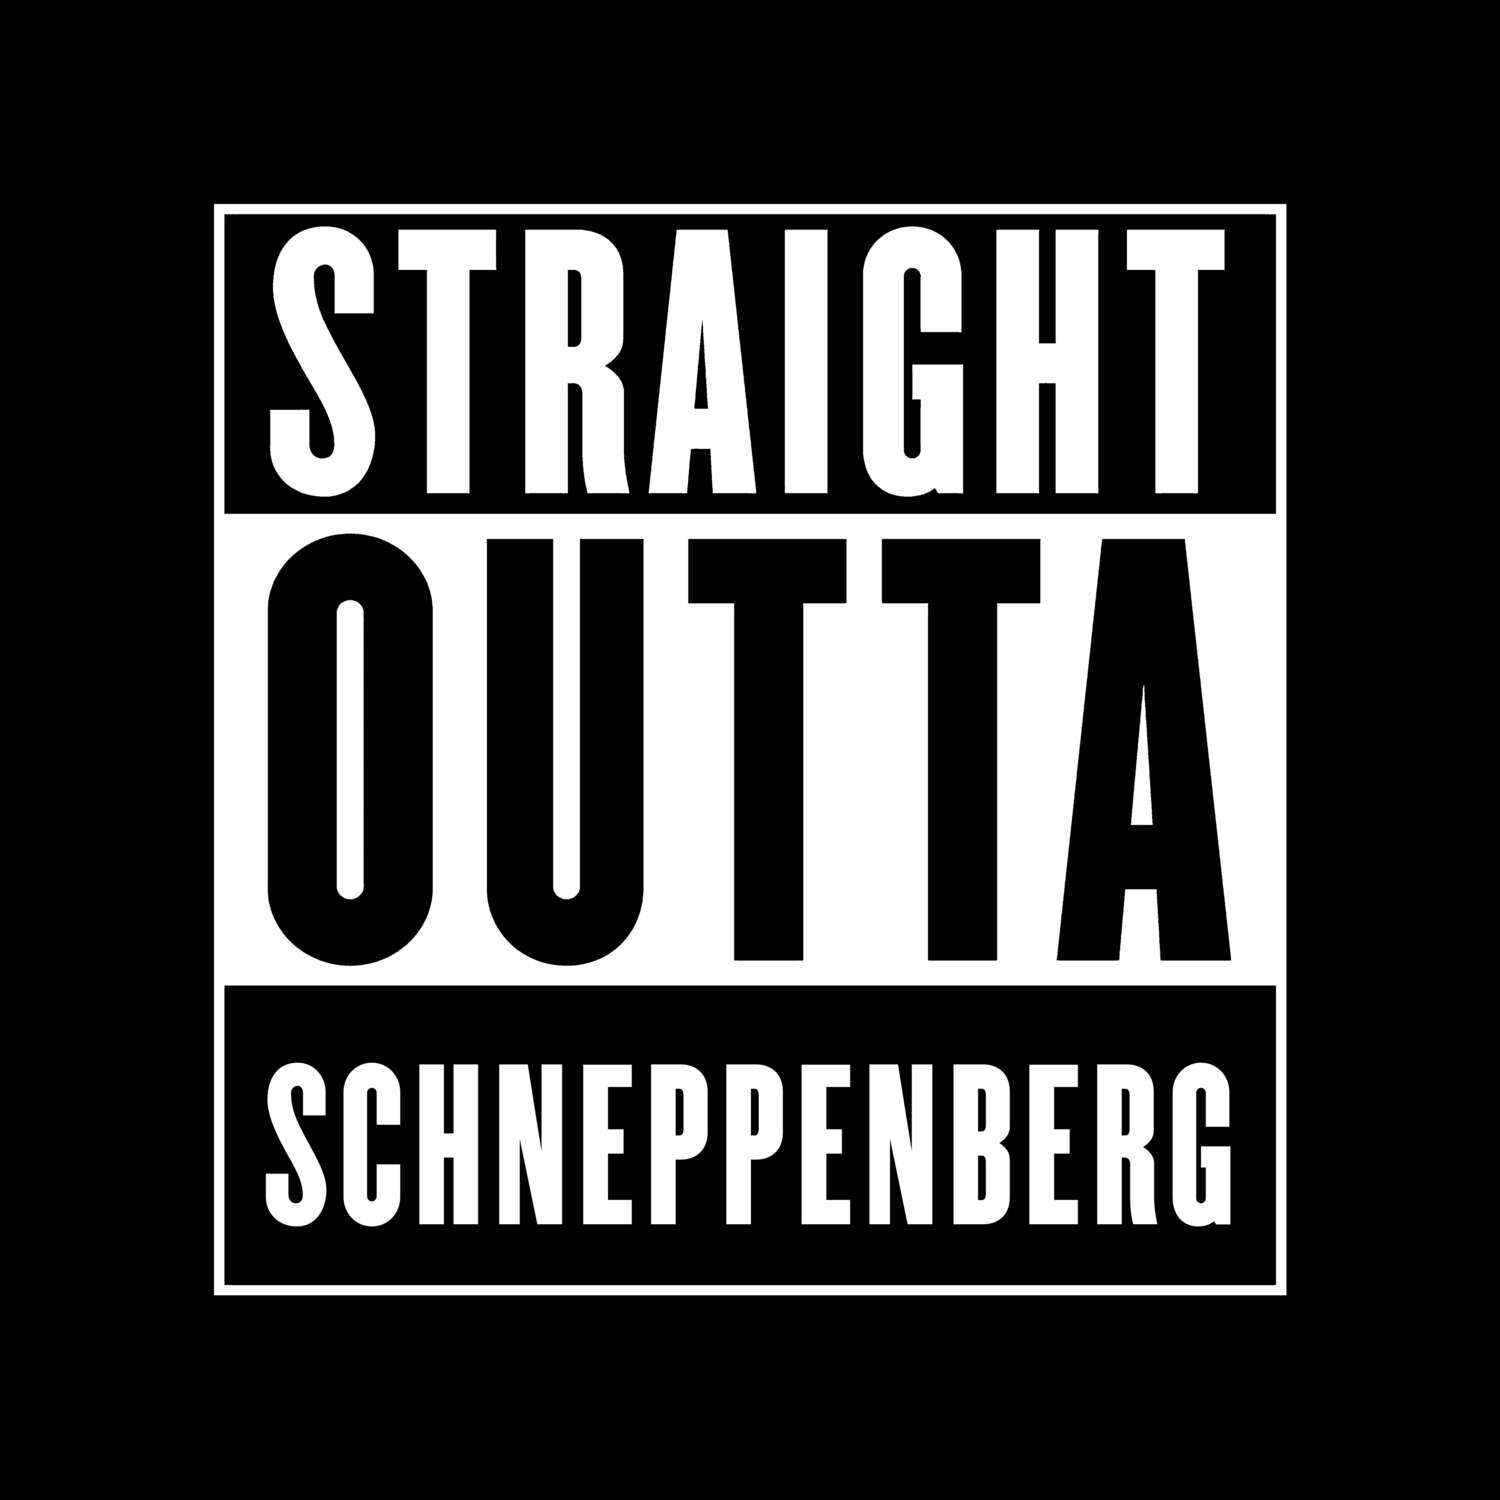 Schneppenberg T-Shirt »Straight Outta«